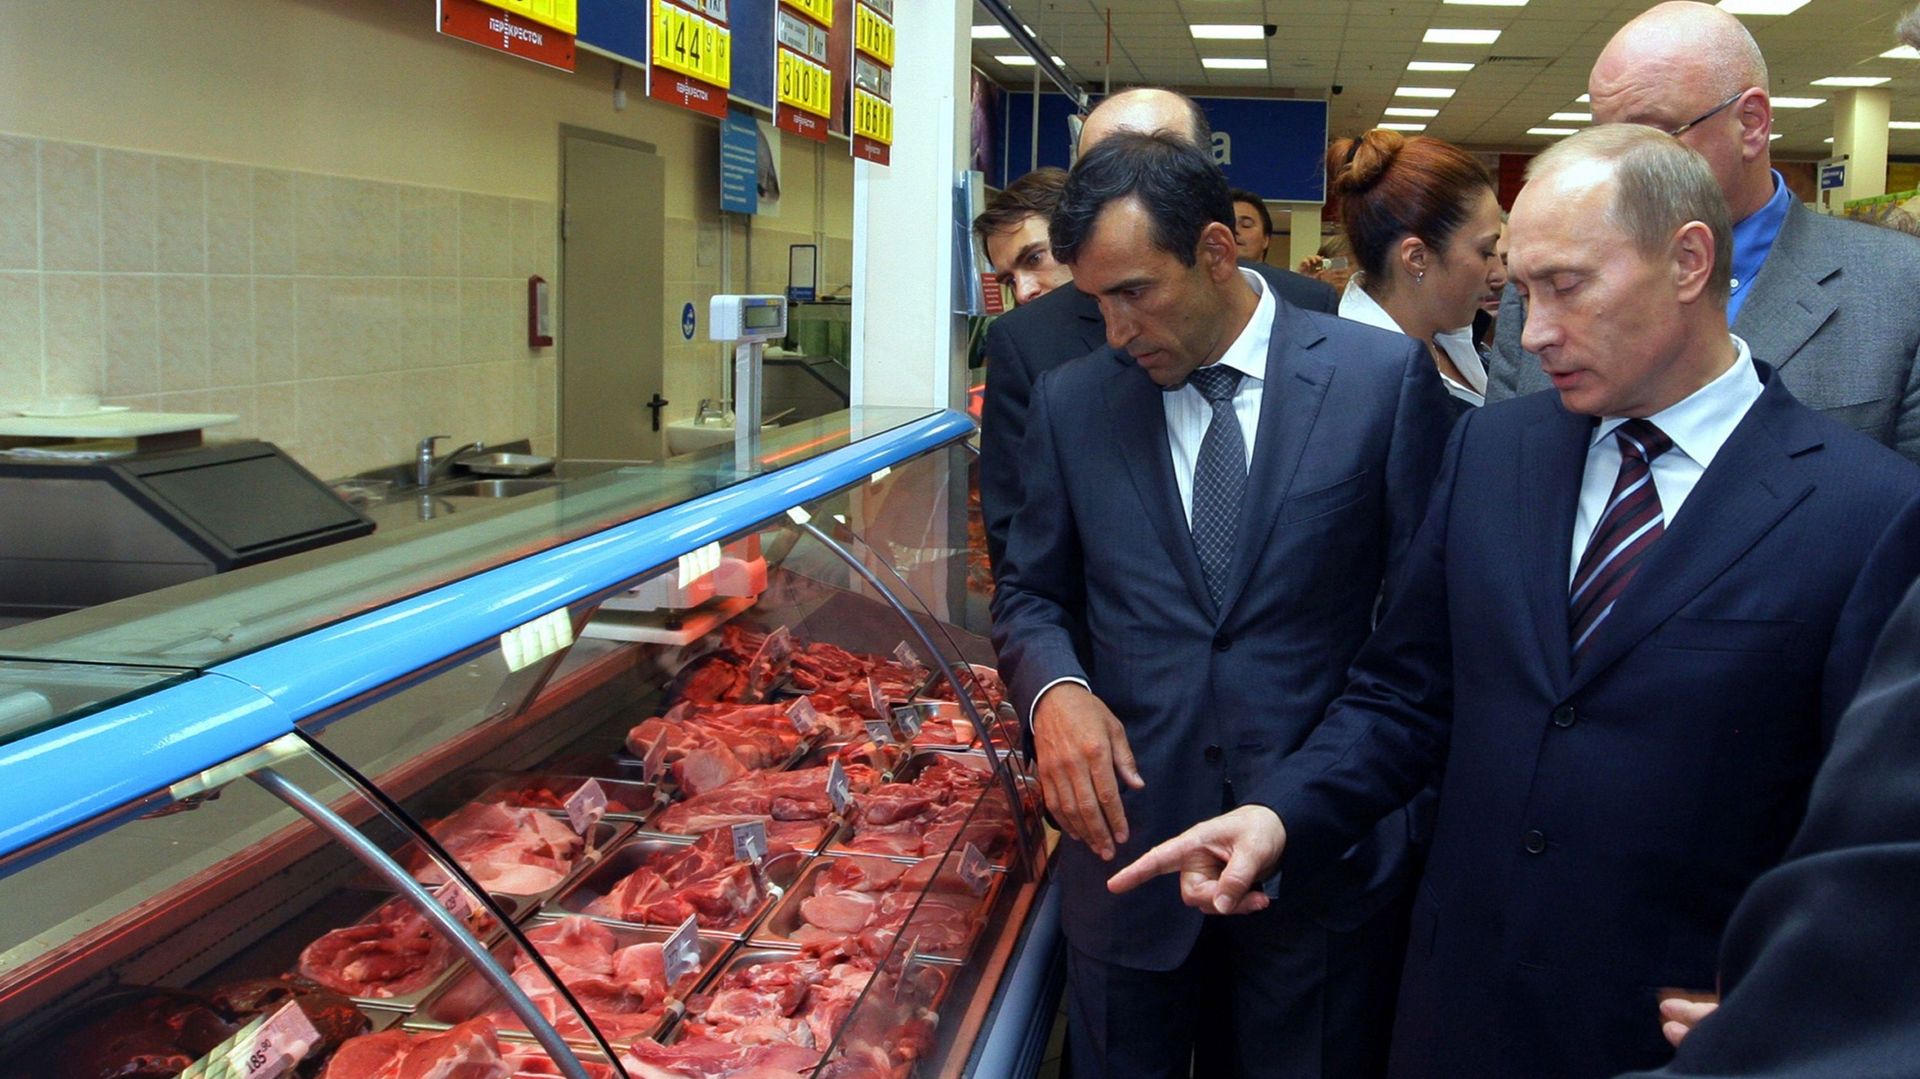 Interdiction de viande US en Russie: plus de 5 milliards de pertes